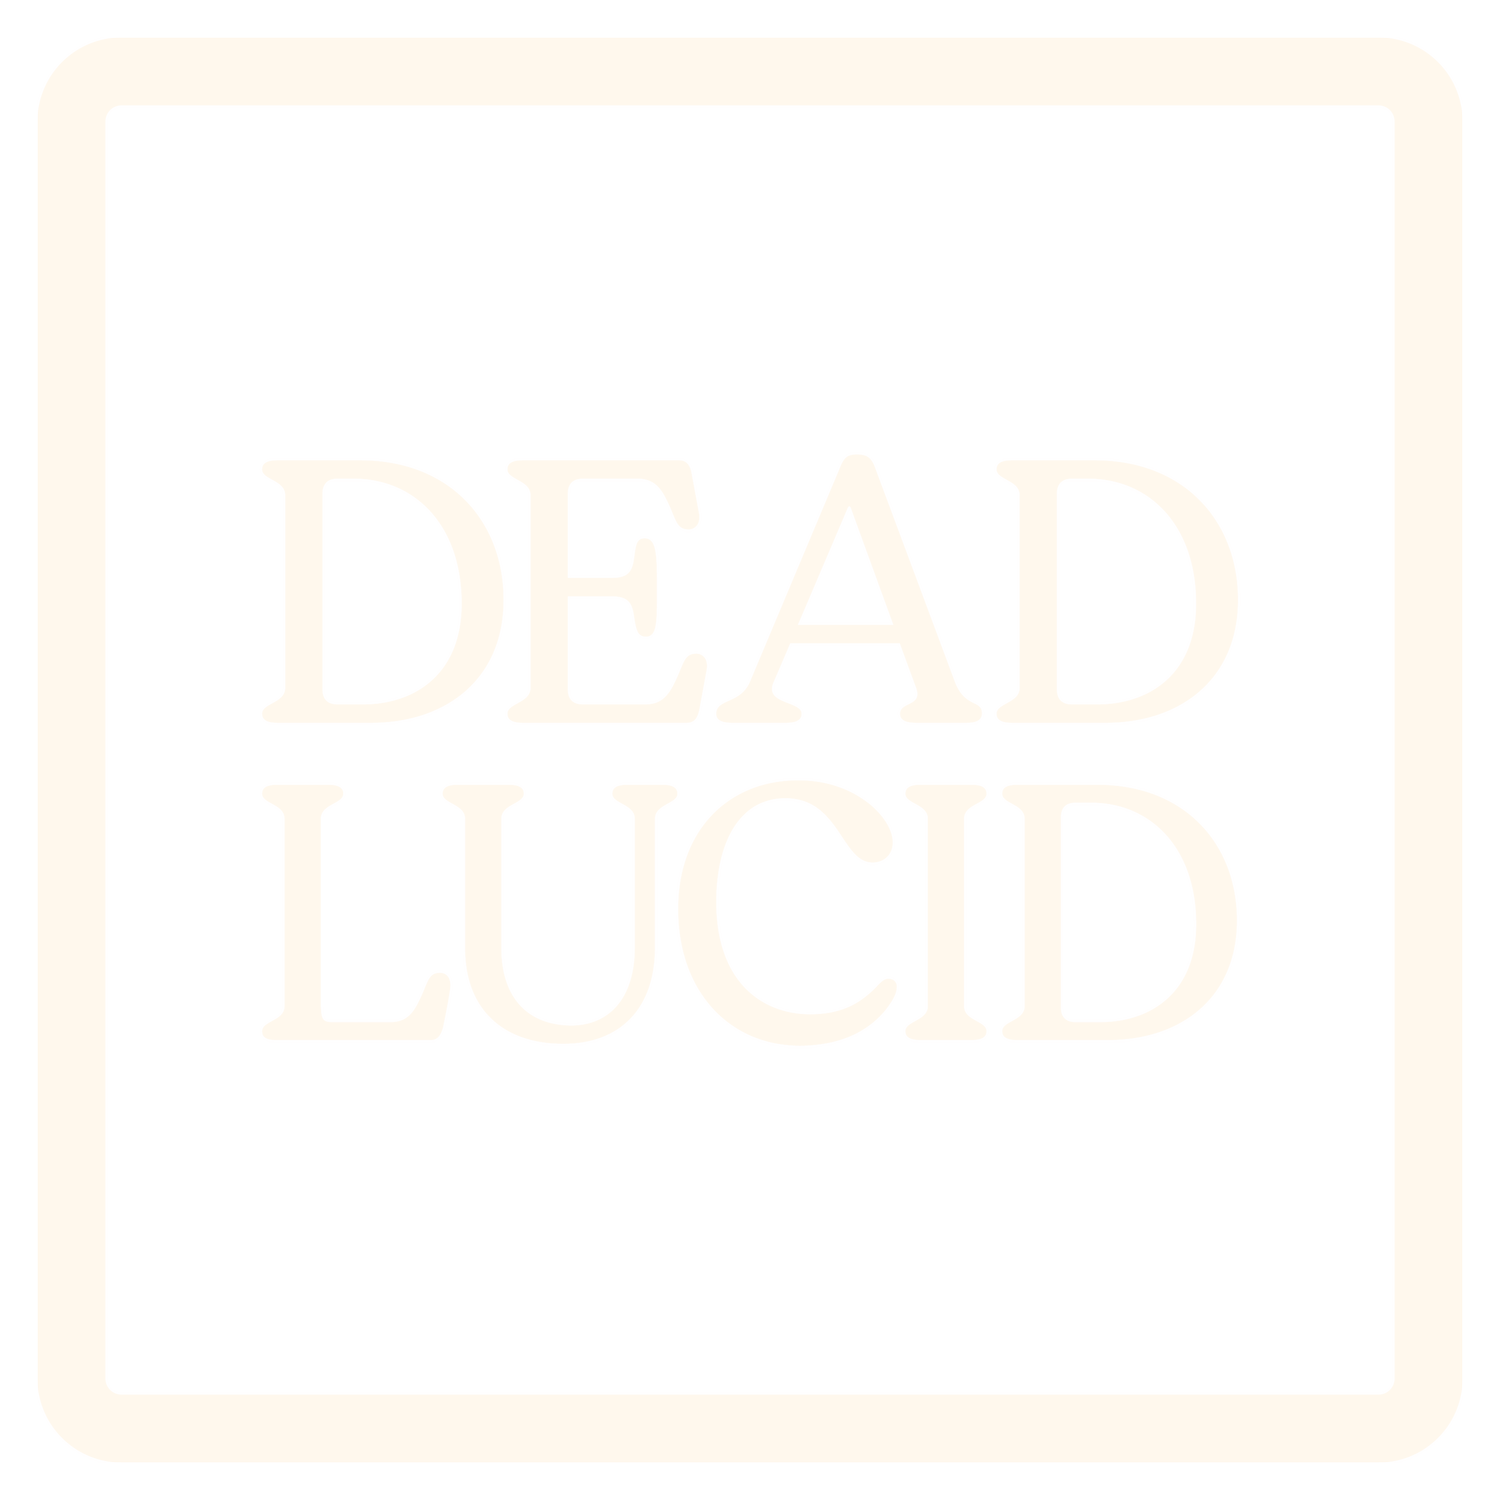 DEAD LUCID